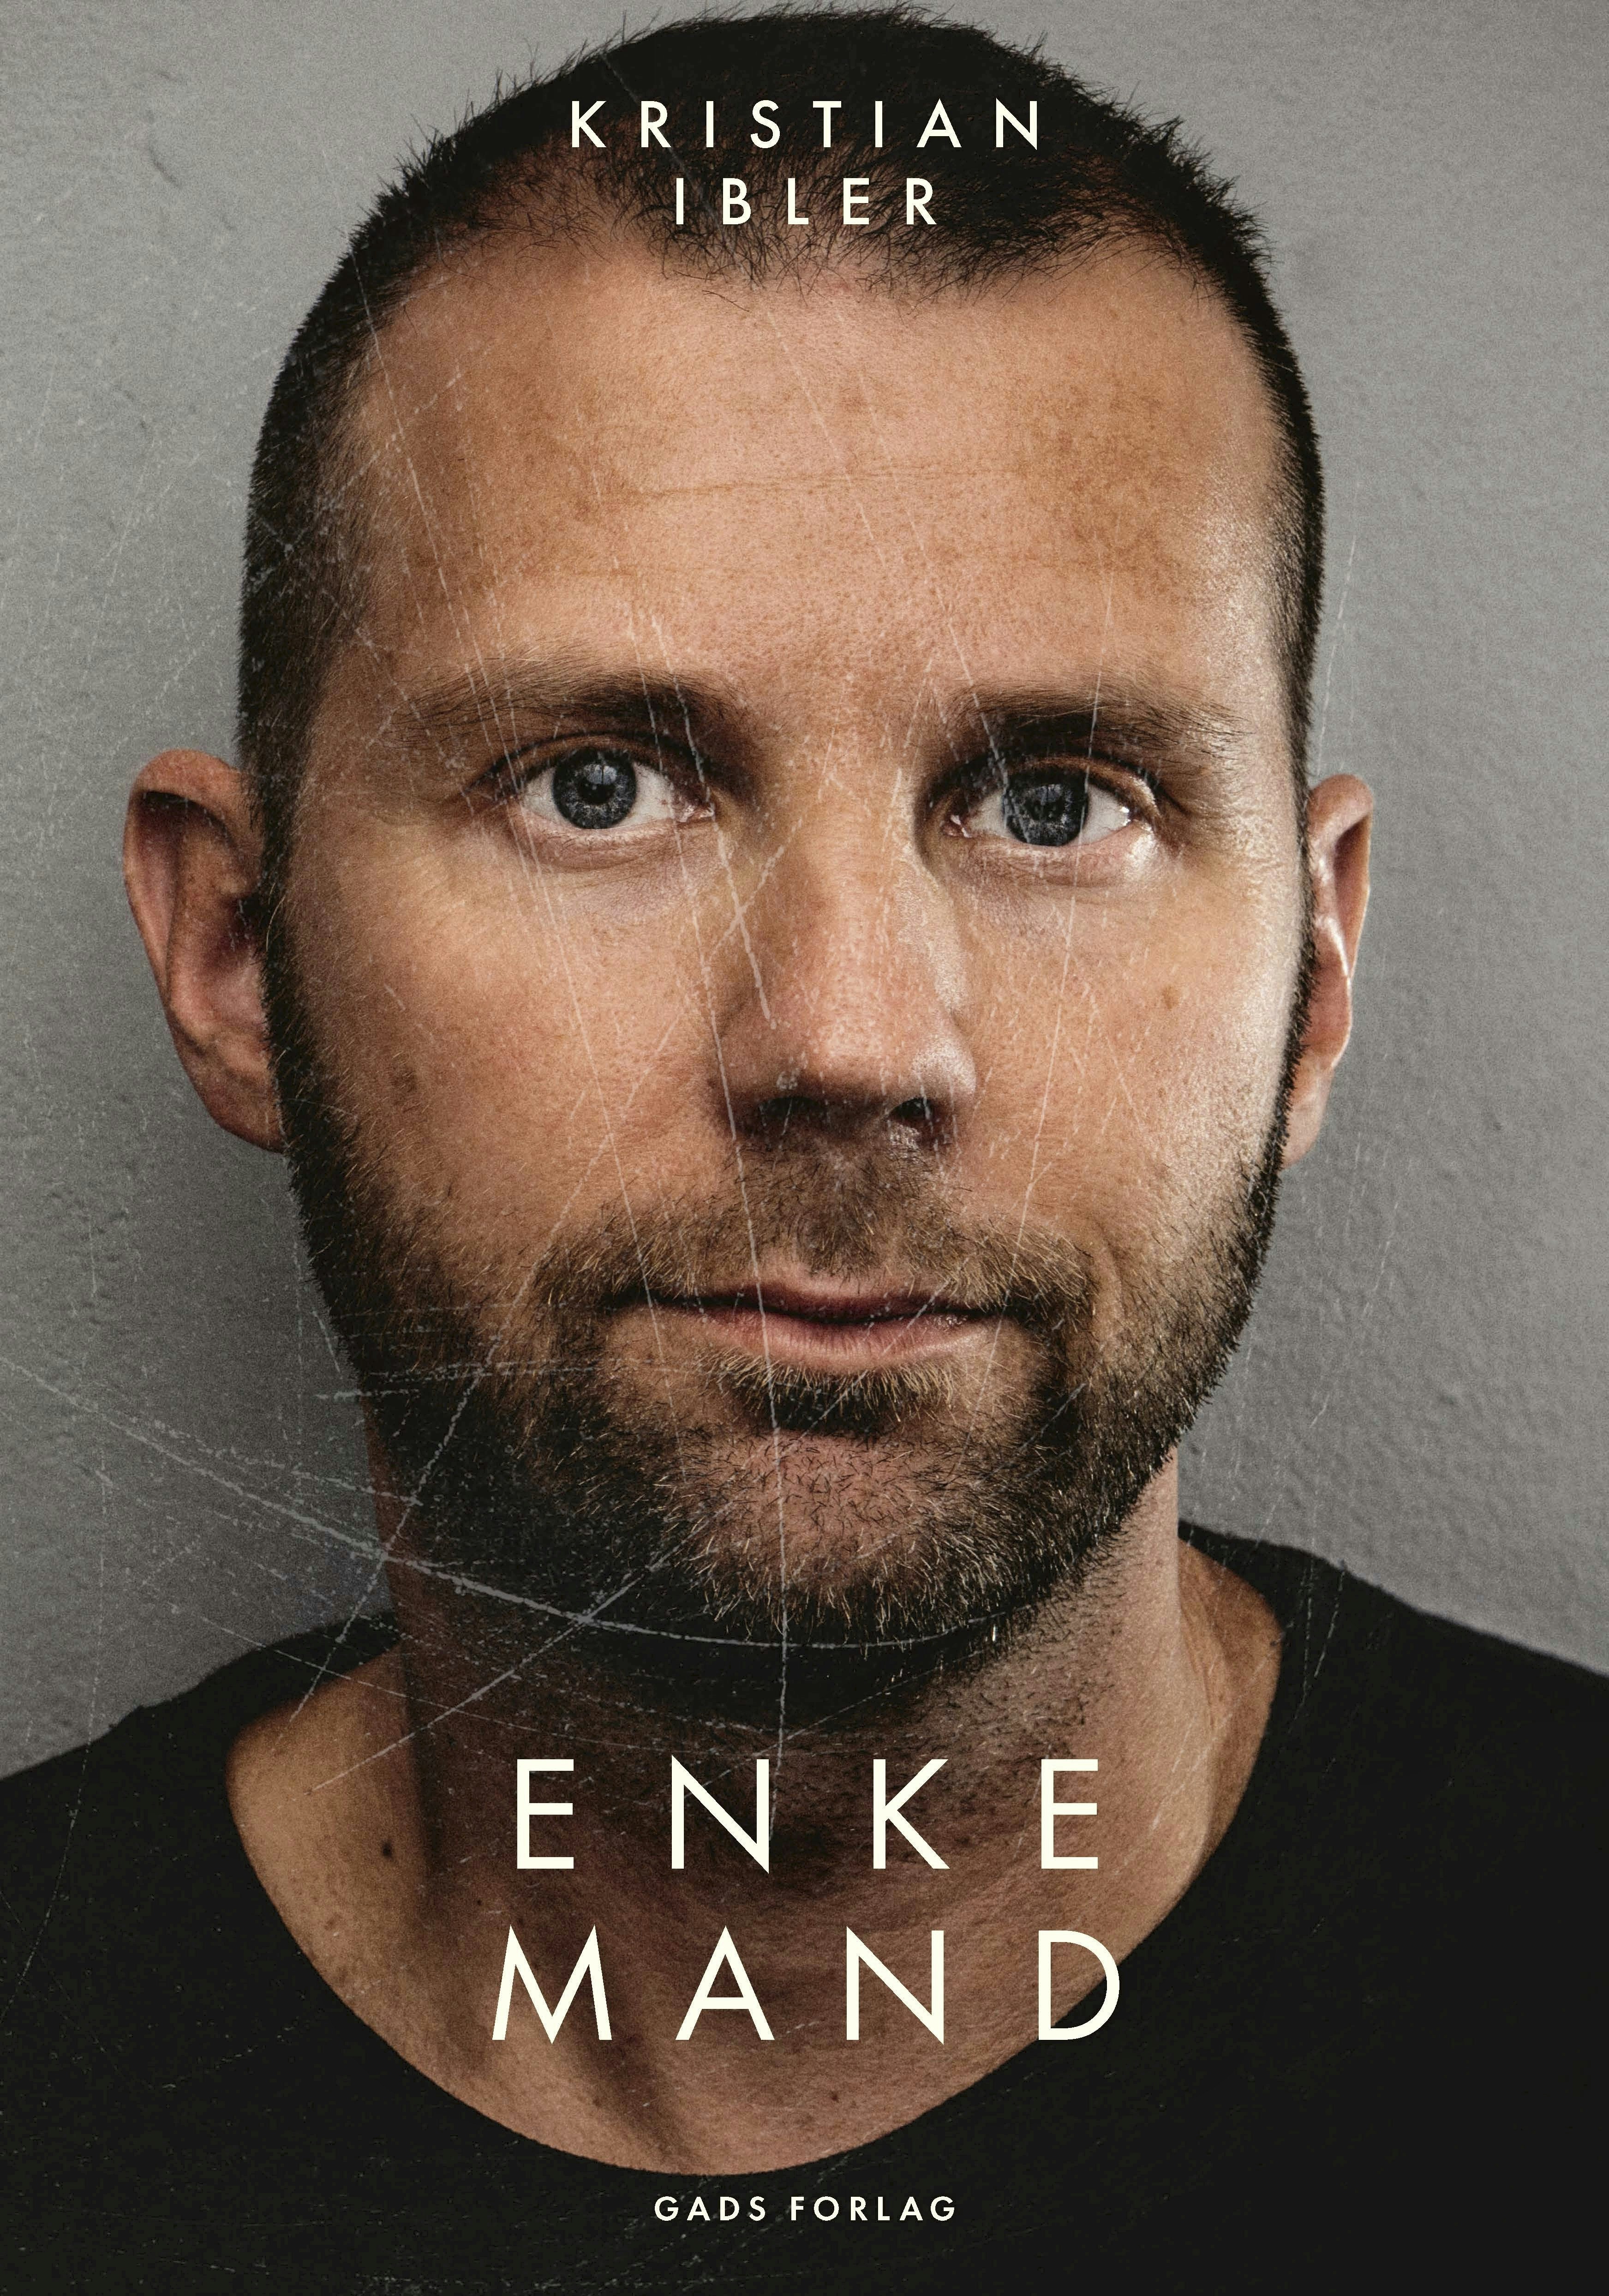 Bogen Enkemand af Kristian Ibler.